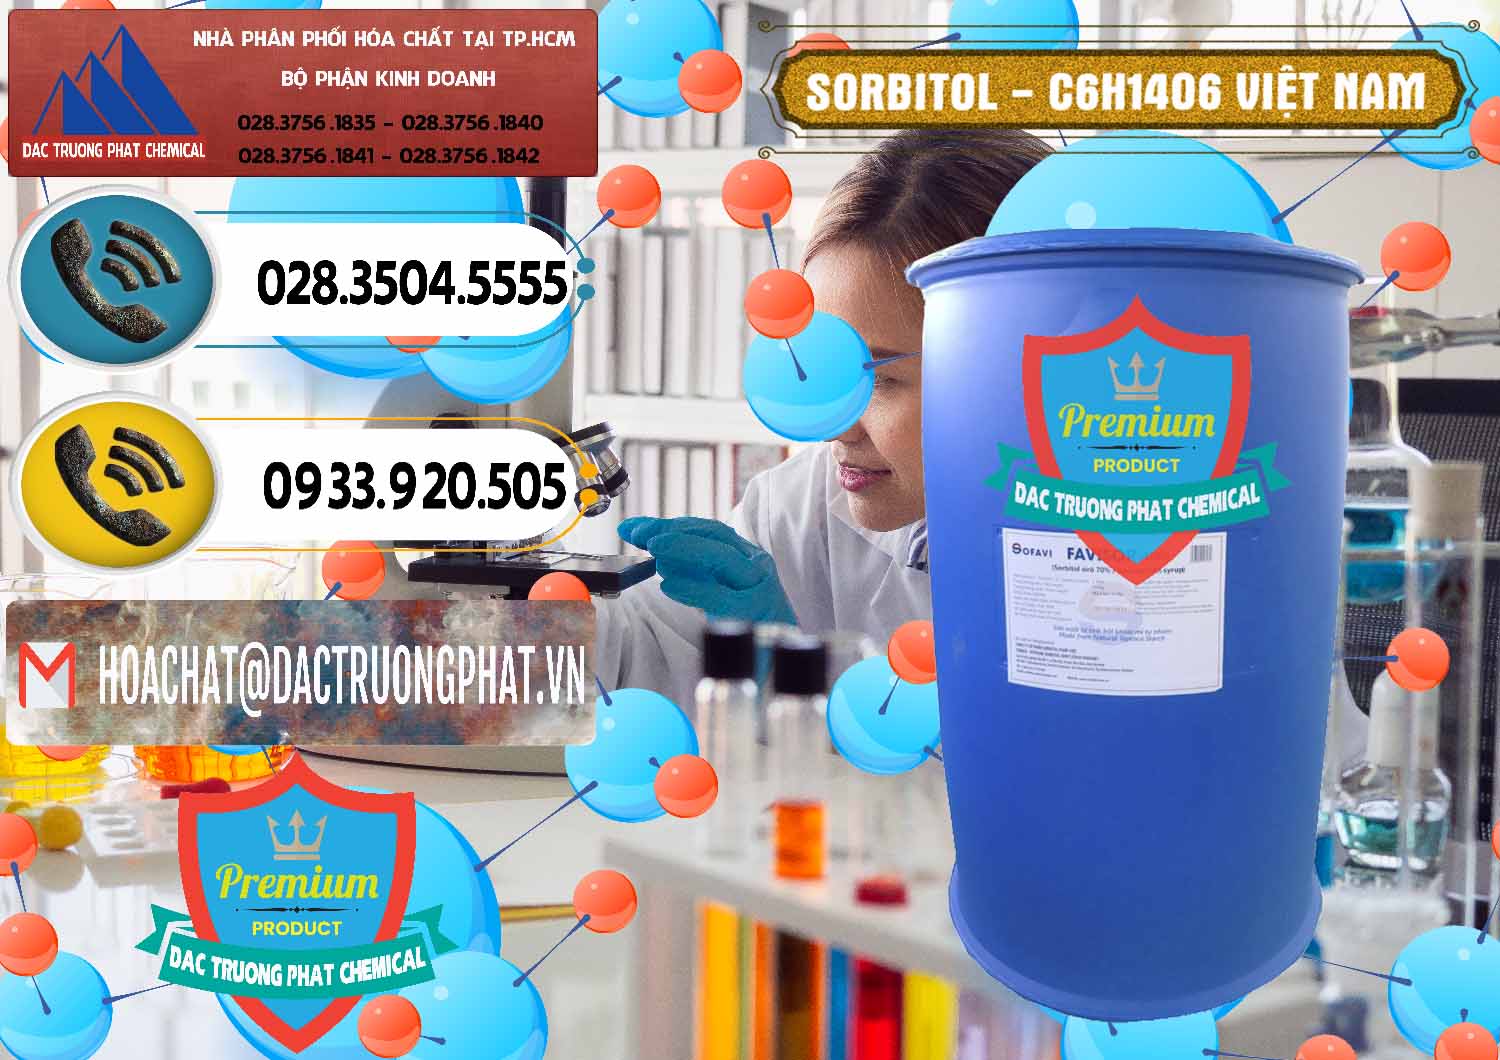 Chuyên kinh doanh và phân phối Sorbitol - C6H14O6 Lỏng 70% Food Grade Việt Nam - 0438 - Nhà cung cấp & kinh doanh hóa chất tại TP.HCM - hoachatdetnhuom.vn